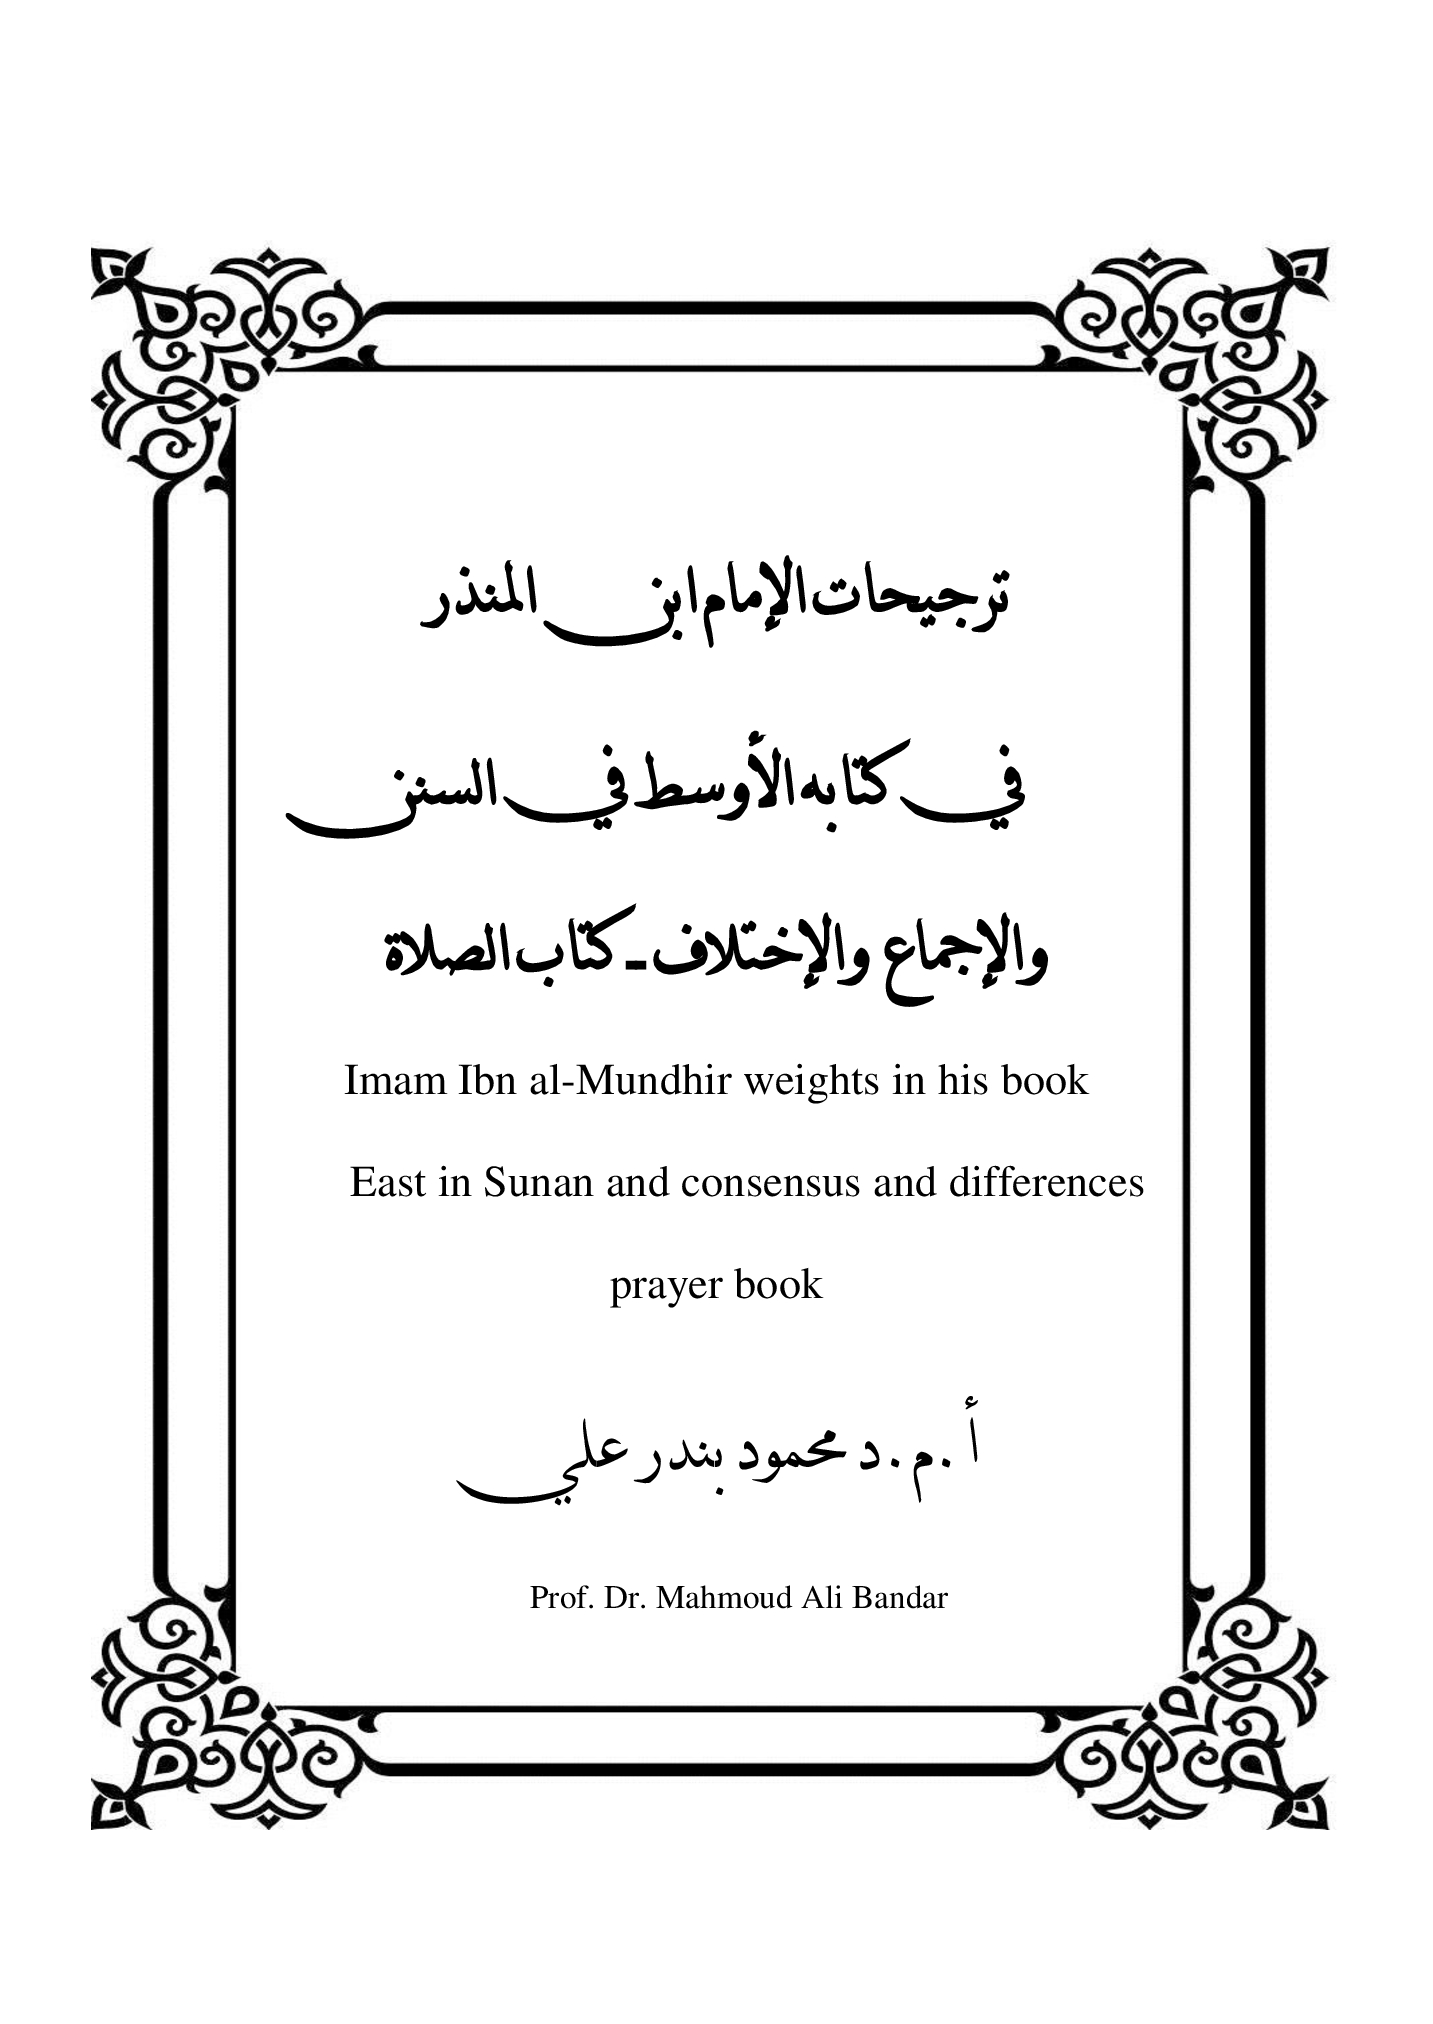 ترجيحات الإمام ابن المنذر              في كتابه الأوسط في السنن والإجماع  والإختلاف ــ كتاب الصلاة